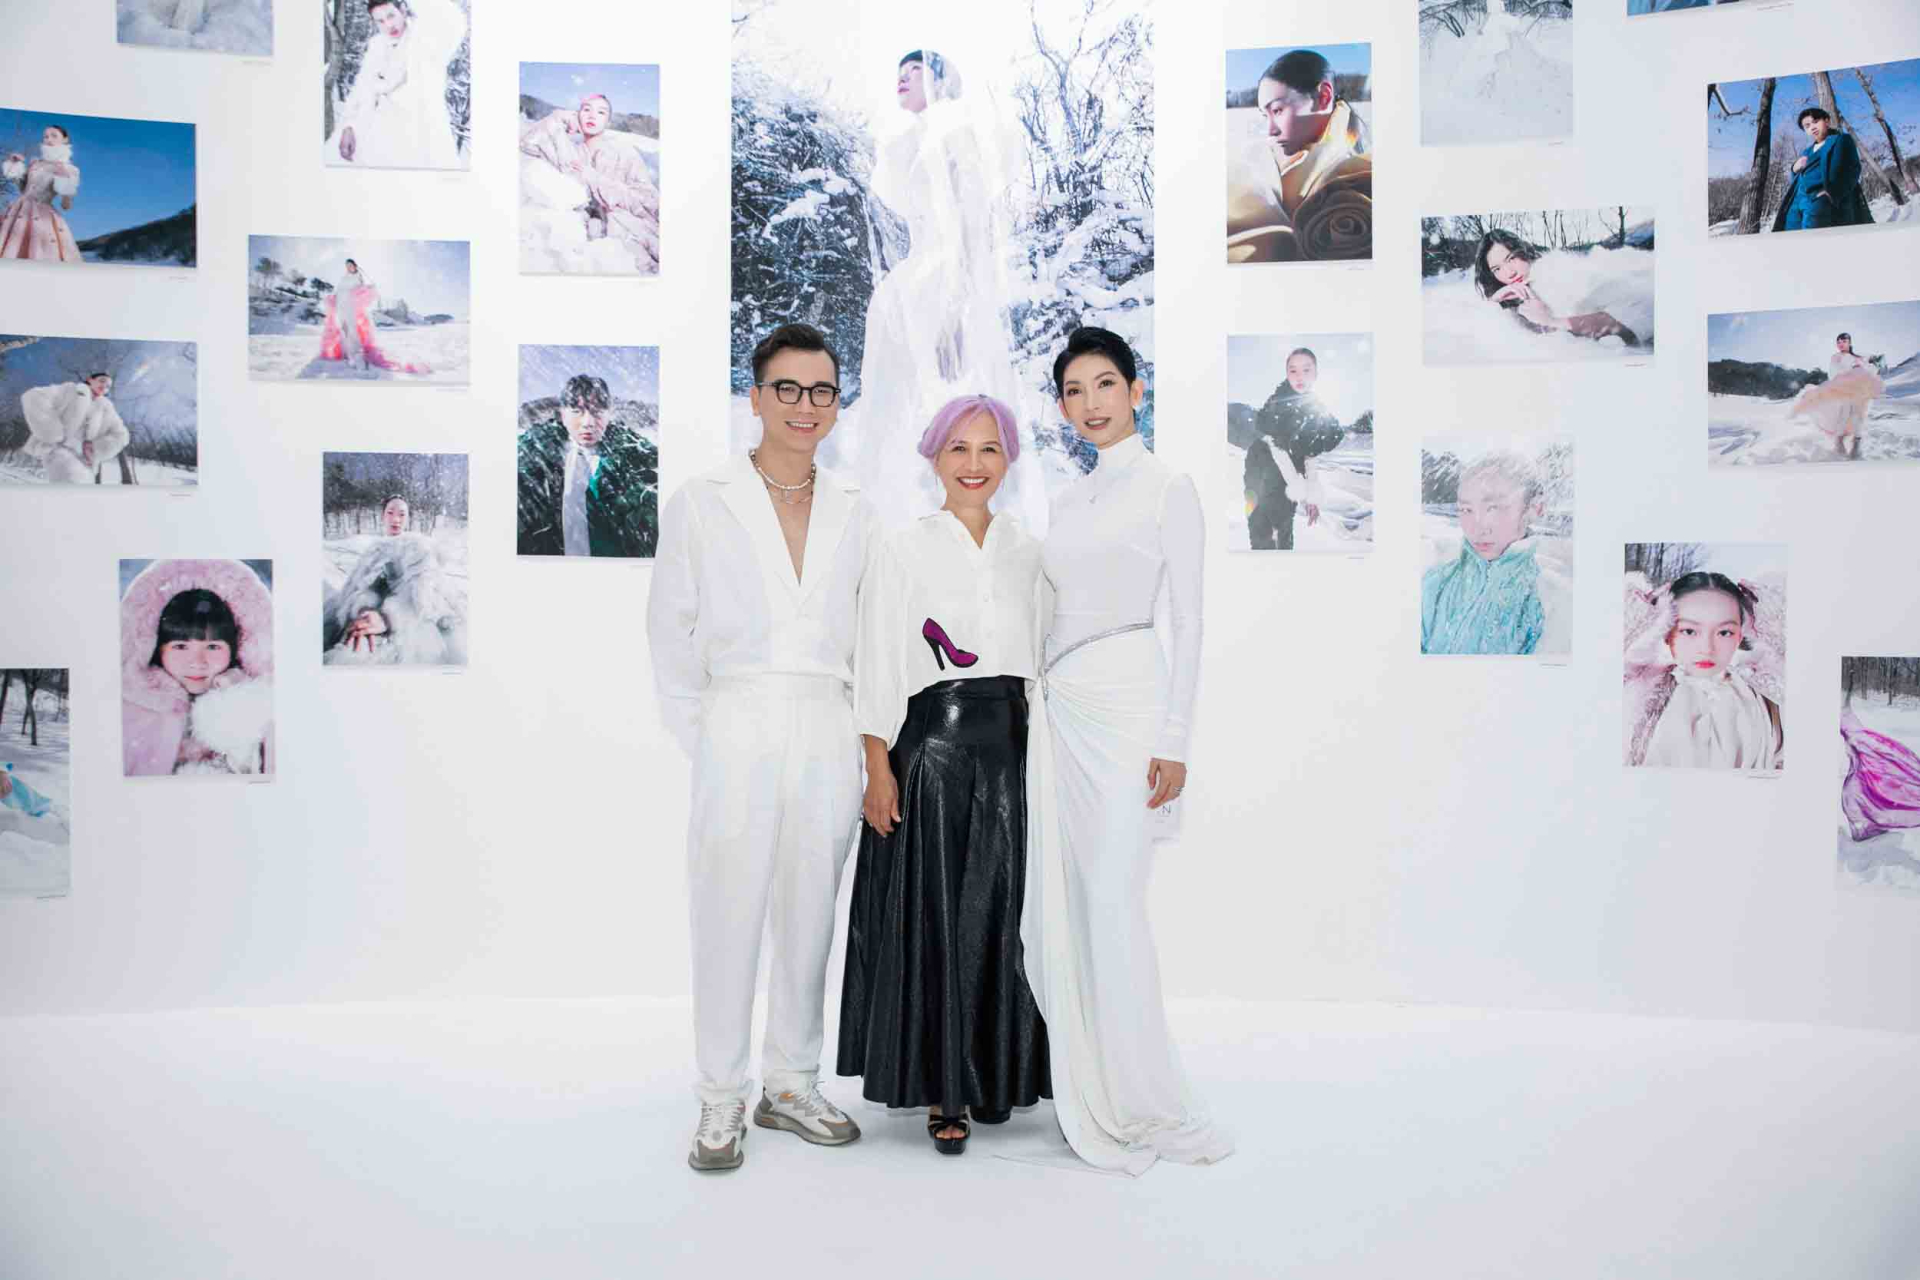 Triển lãm ảnh thời trang The New Generation Of Models: Dấu ấn thời trang của người Việt tại Hàn Quốc - ảnh 1